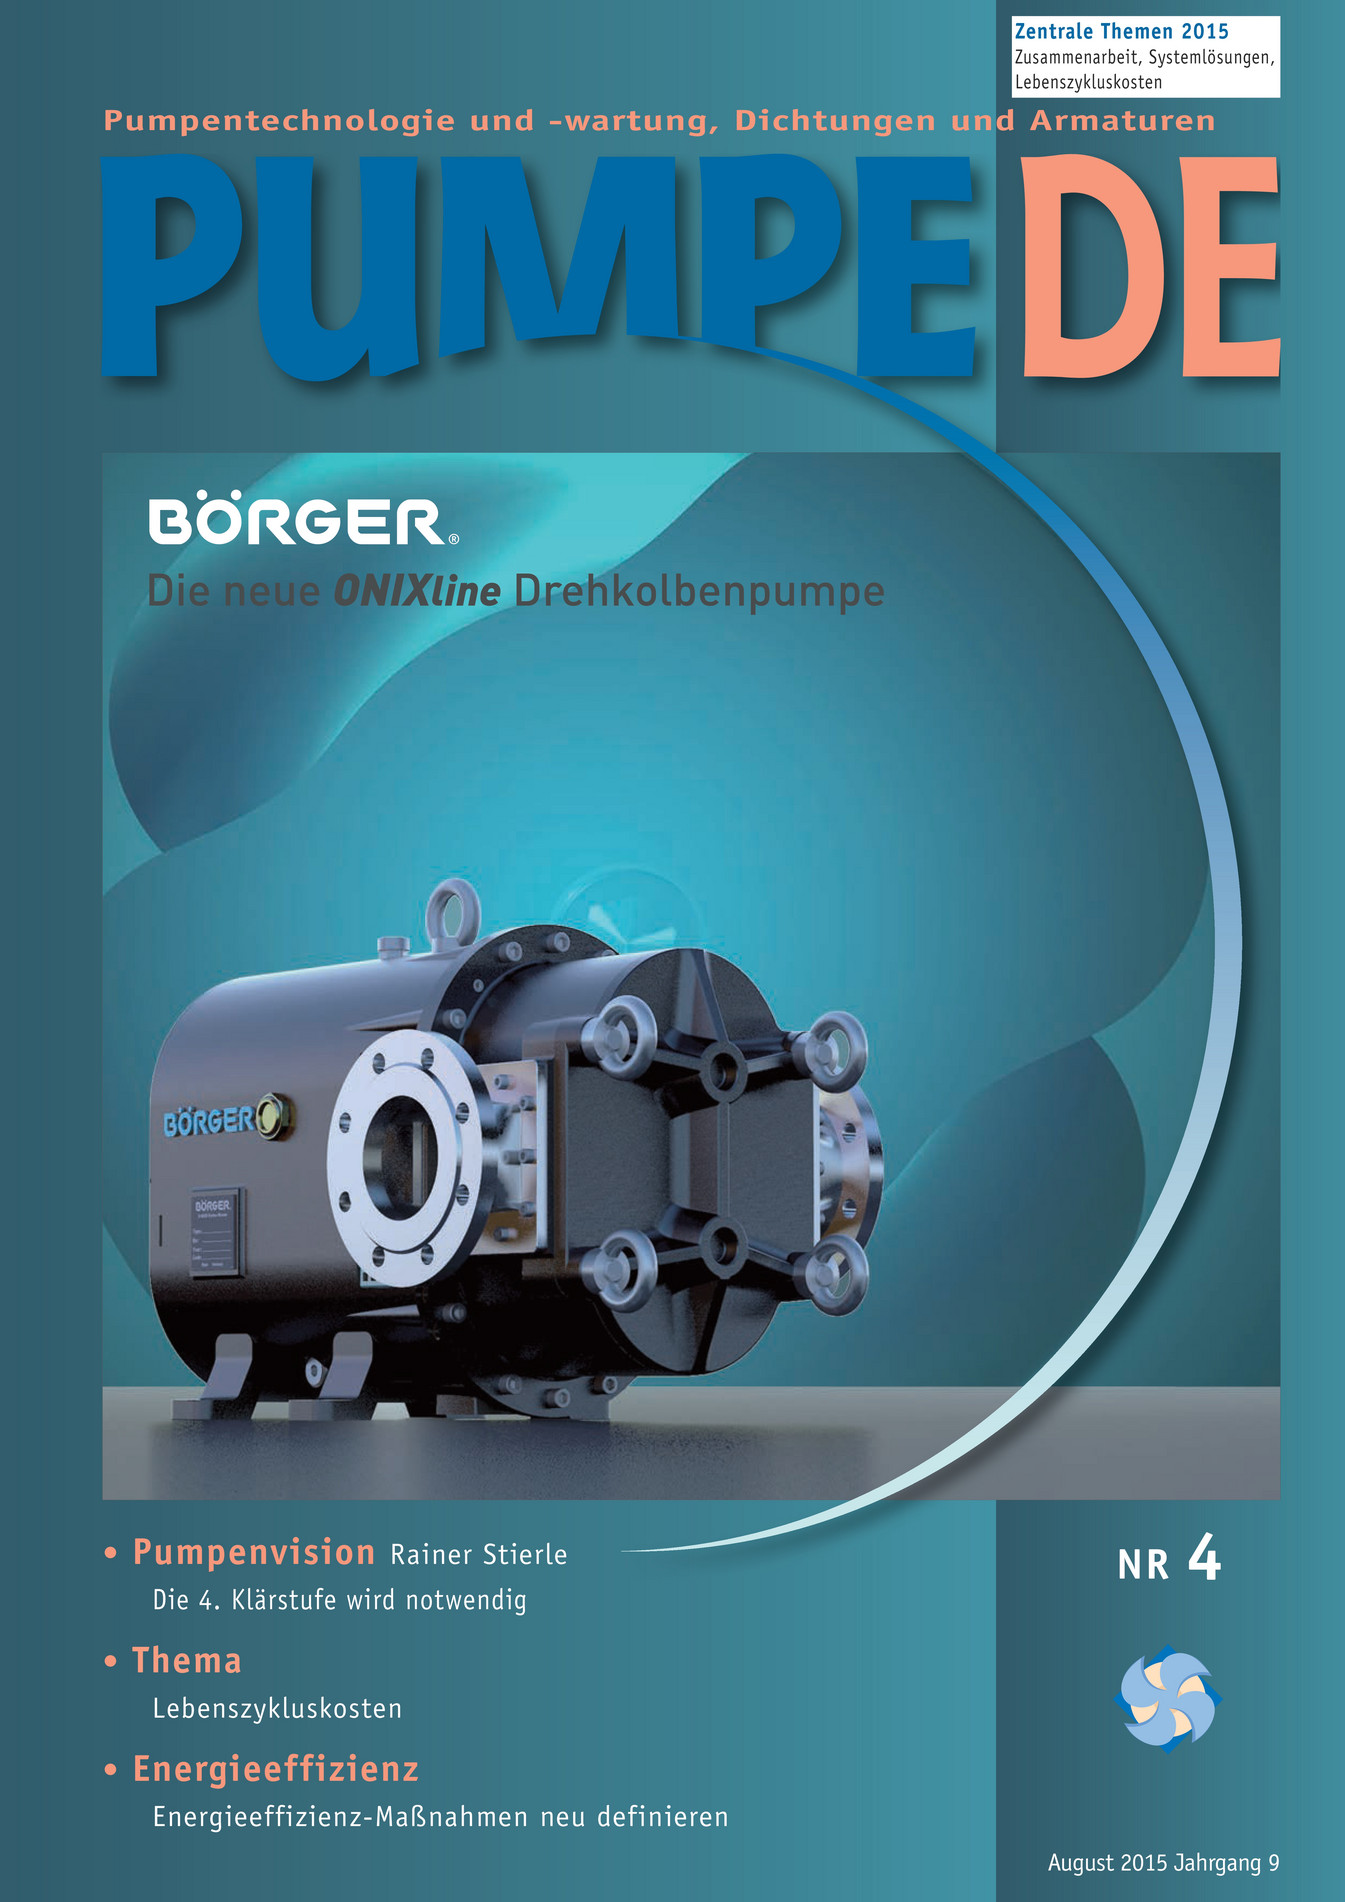 ddvmedia-pumpe-de-4-2015-seite-1